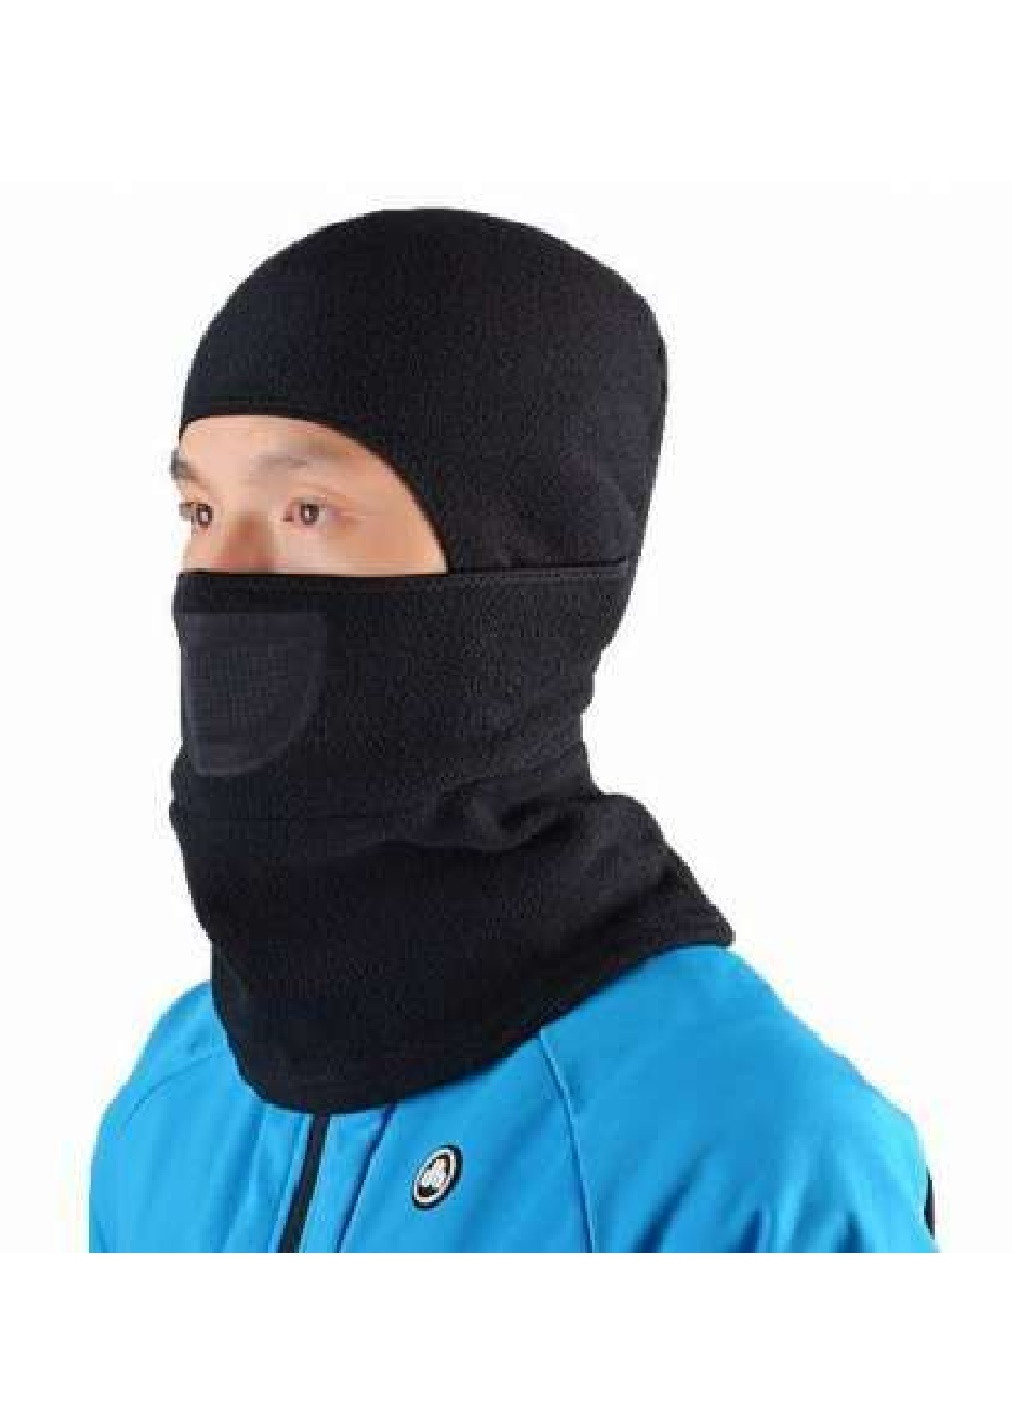 Francesco Marconi термо маска флисовая балаклава зимний бафф шарф подшлемник лыжная шапка (472825-prob) черная однотонный черный кэжуал флис производство - Китай